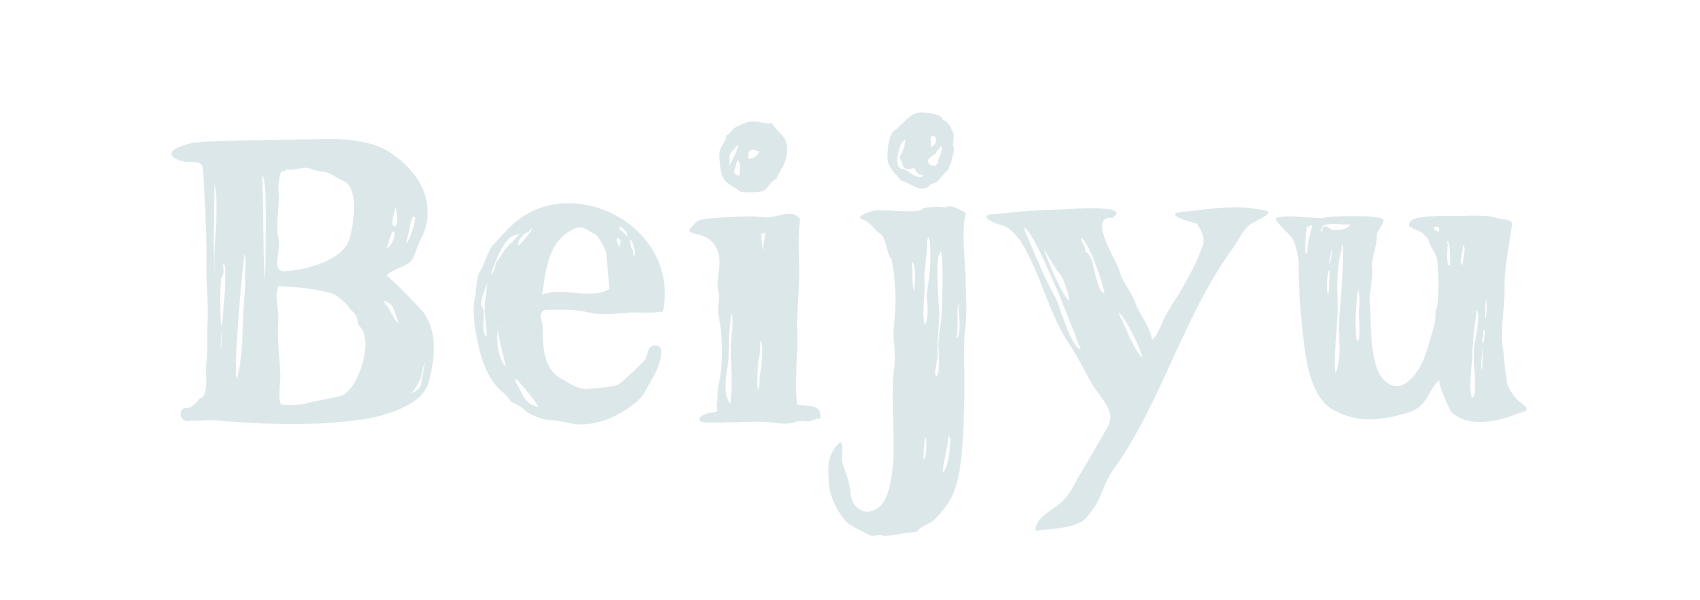 beijyu footer logo